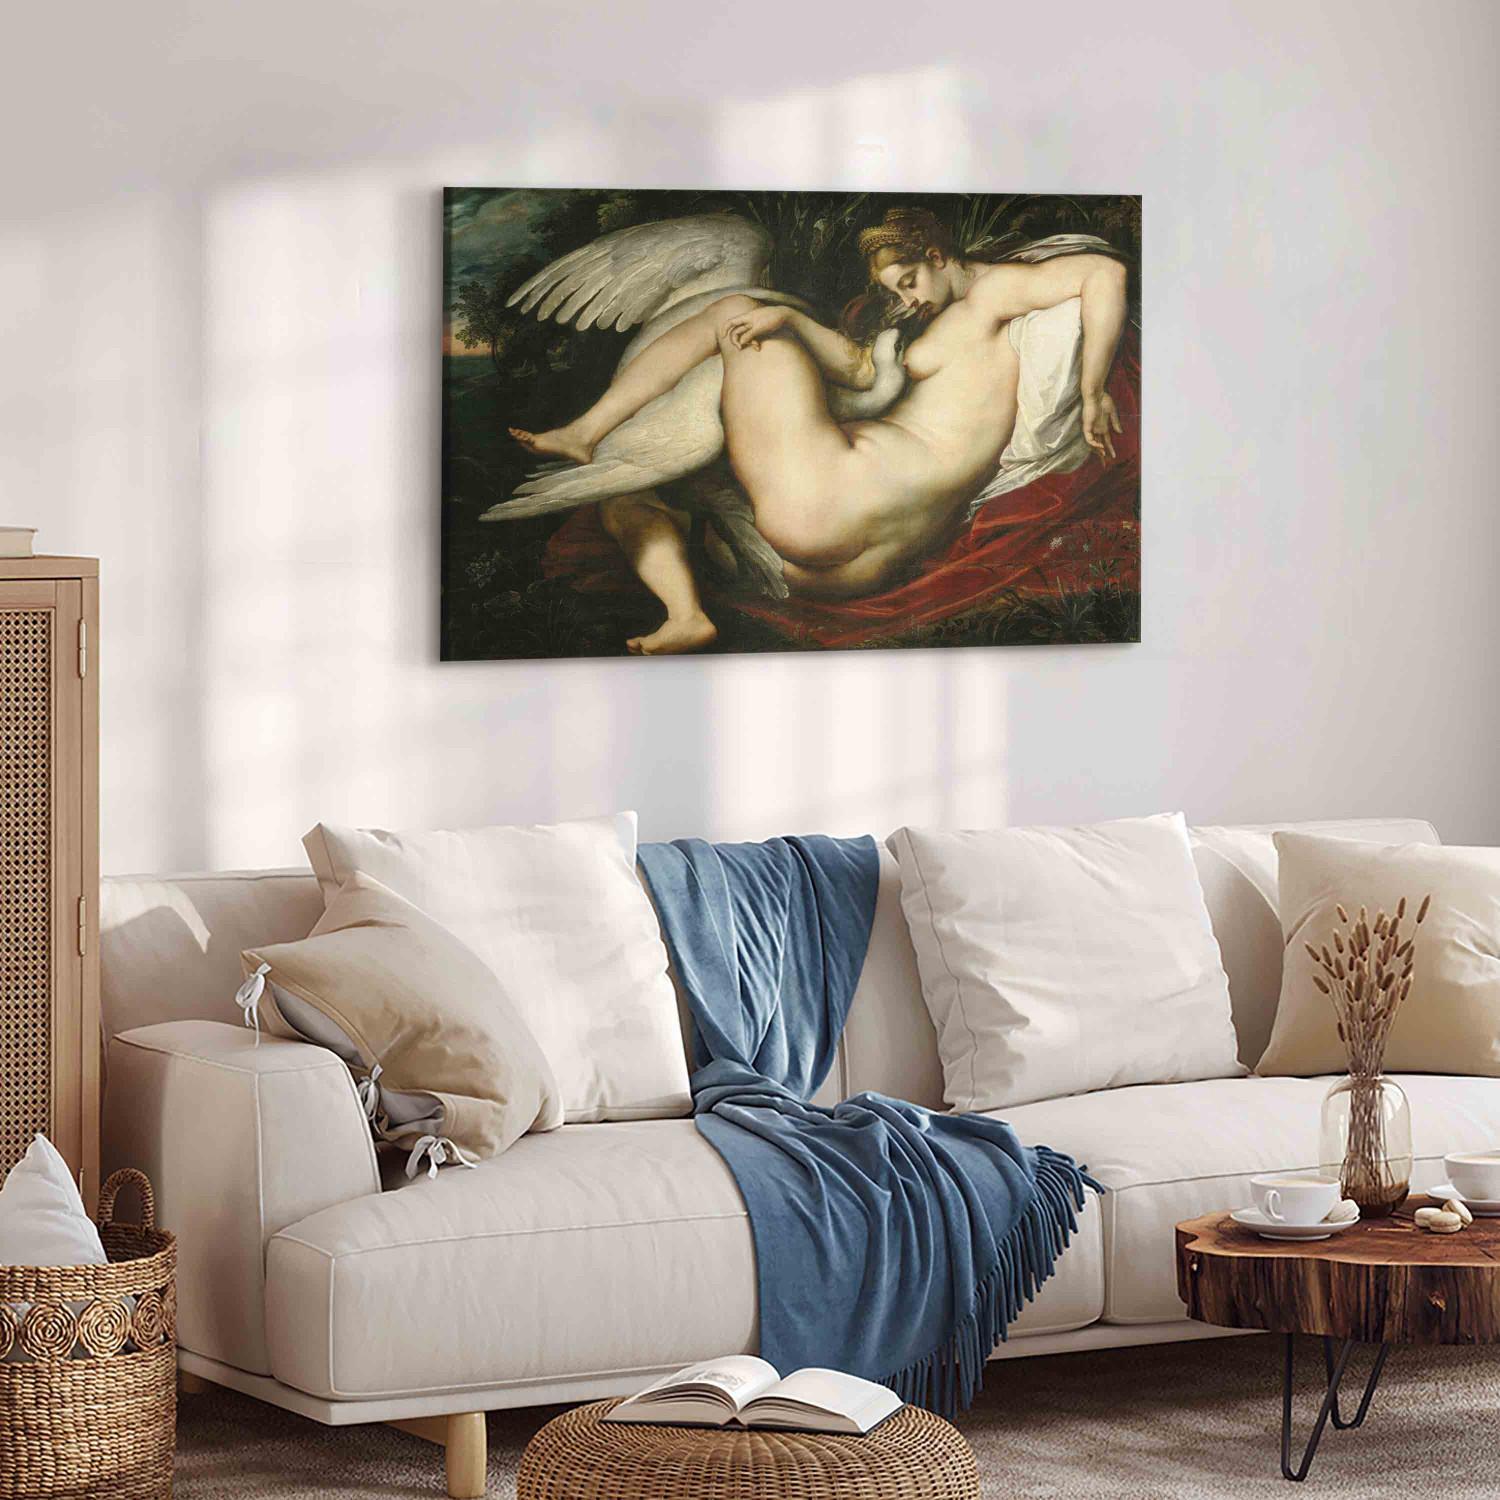 Réplica de pintura Leda and the Swan